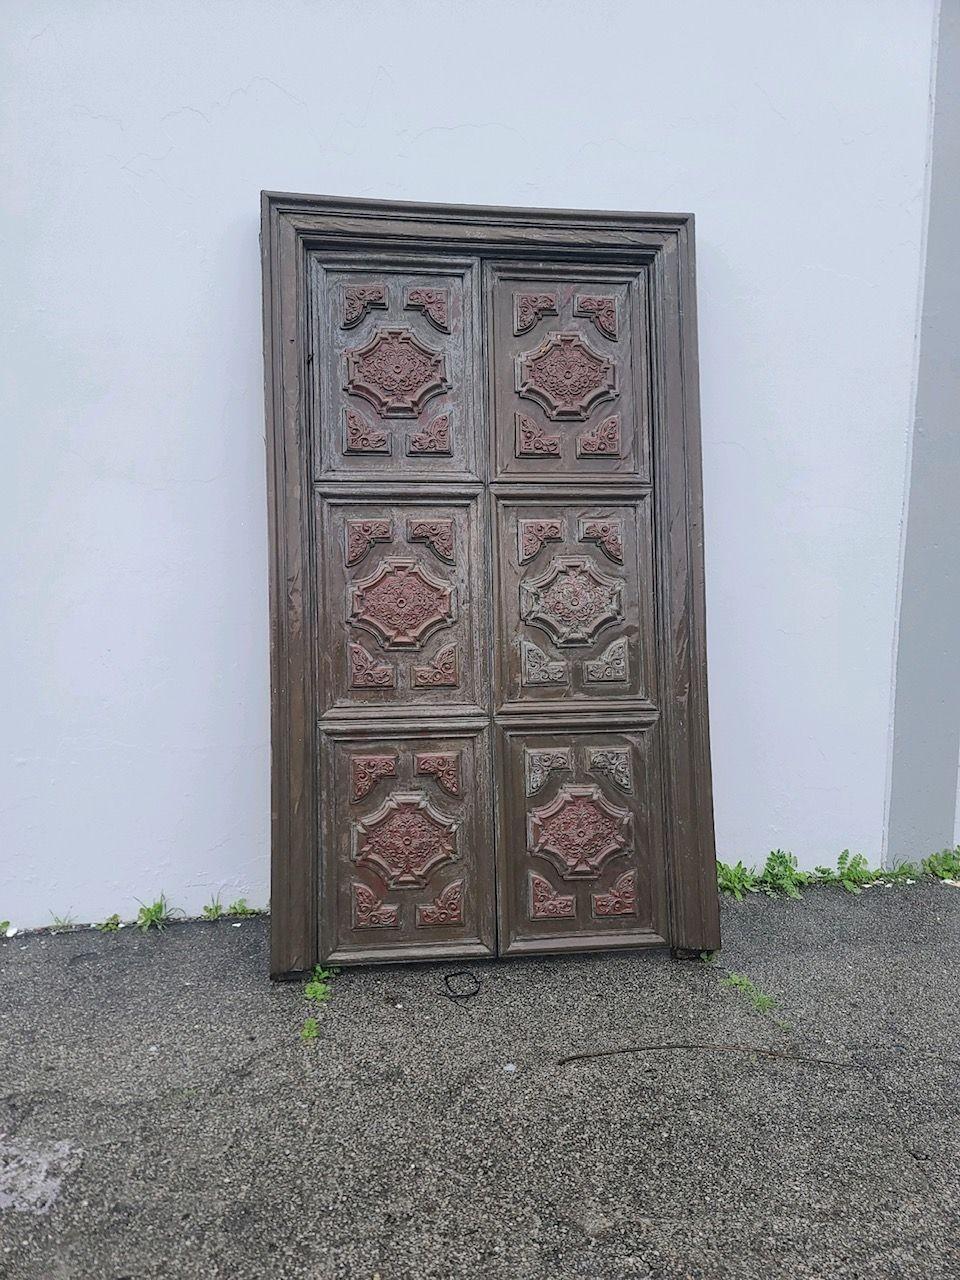 Große 8' mehrwandige, mit Bronze überzogene Innentüren aus Nussbaumholz, die an ihrem ursprünglichen Türrahmen befestigt sind und an der Vorderseite jeder Tür mehrere Regency-Kronensprossen aufweisen.

Türen auf Rahmen: H 102